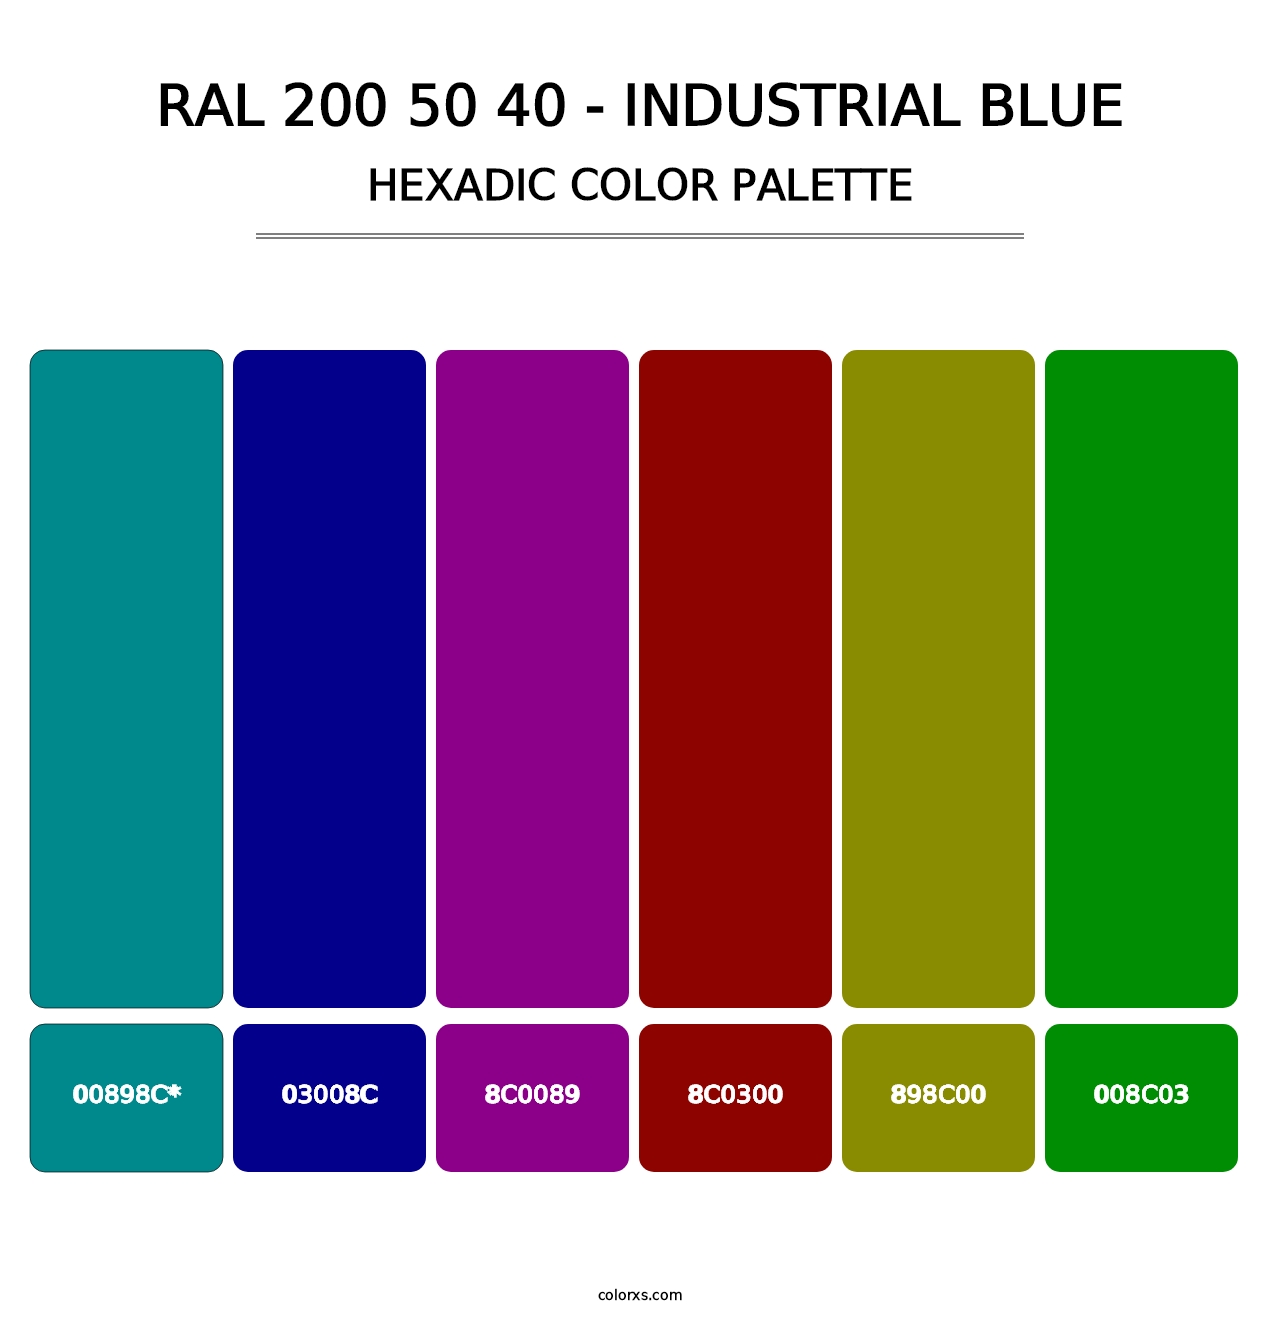 RAL 200 50 40 - Industrial Blue - Hexadic Color Palette